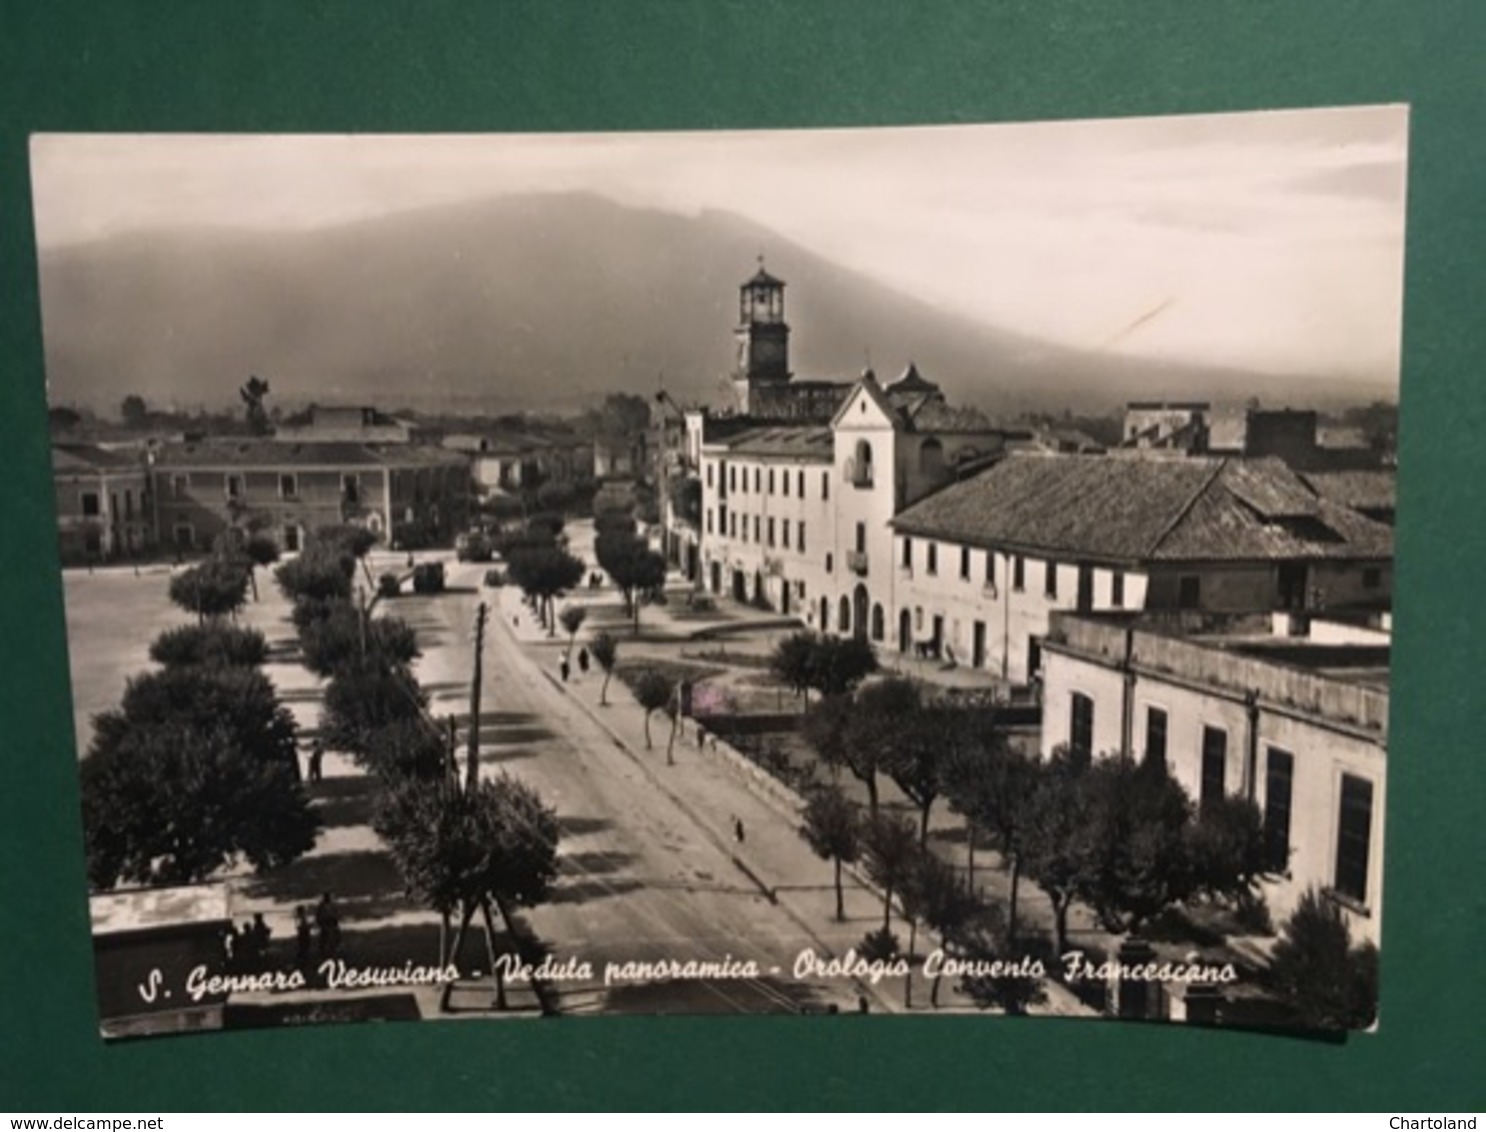 Cartolina S. Gennaro Vesuviano - Veduta Panoramica - Orologio Convento - 1964 - Napoli